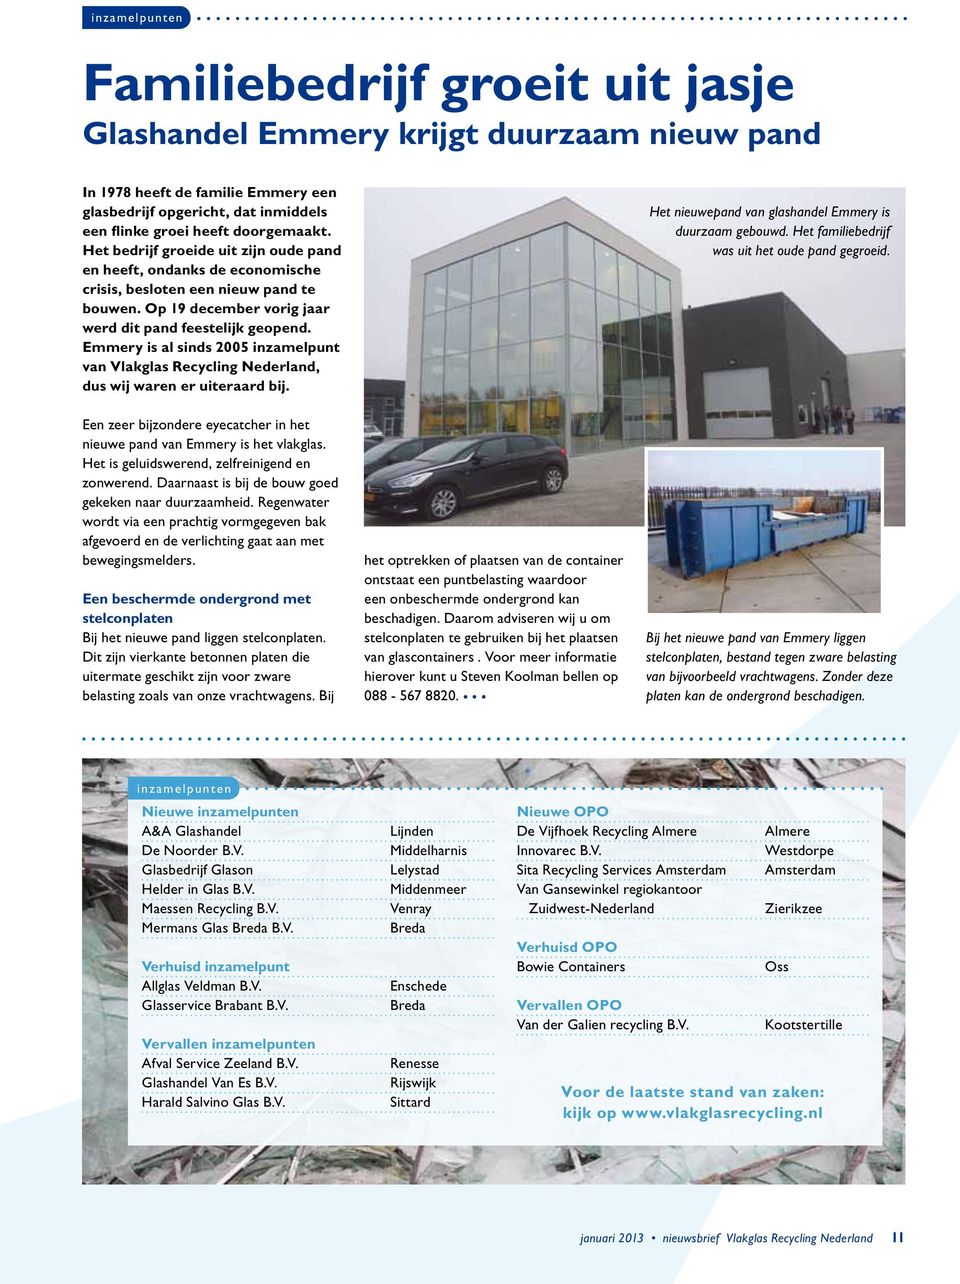 Emmery is al sinds 2005 inzamelpunt van Vlakglas Recycling Nederland, dus wij waren er uiteraard bij. Het nieuwepand van glashandel Emmery is duurzaam gebouwd.